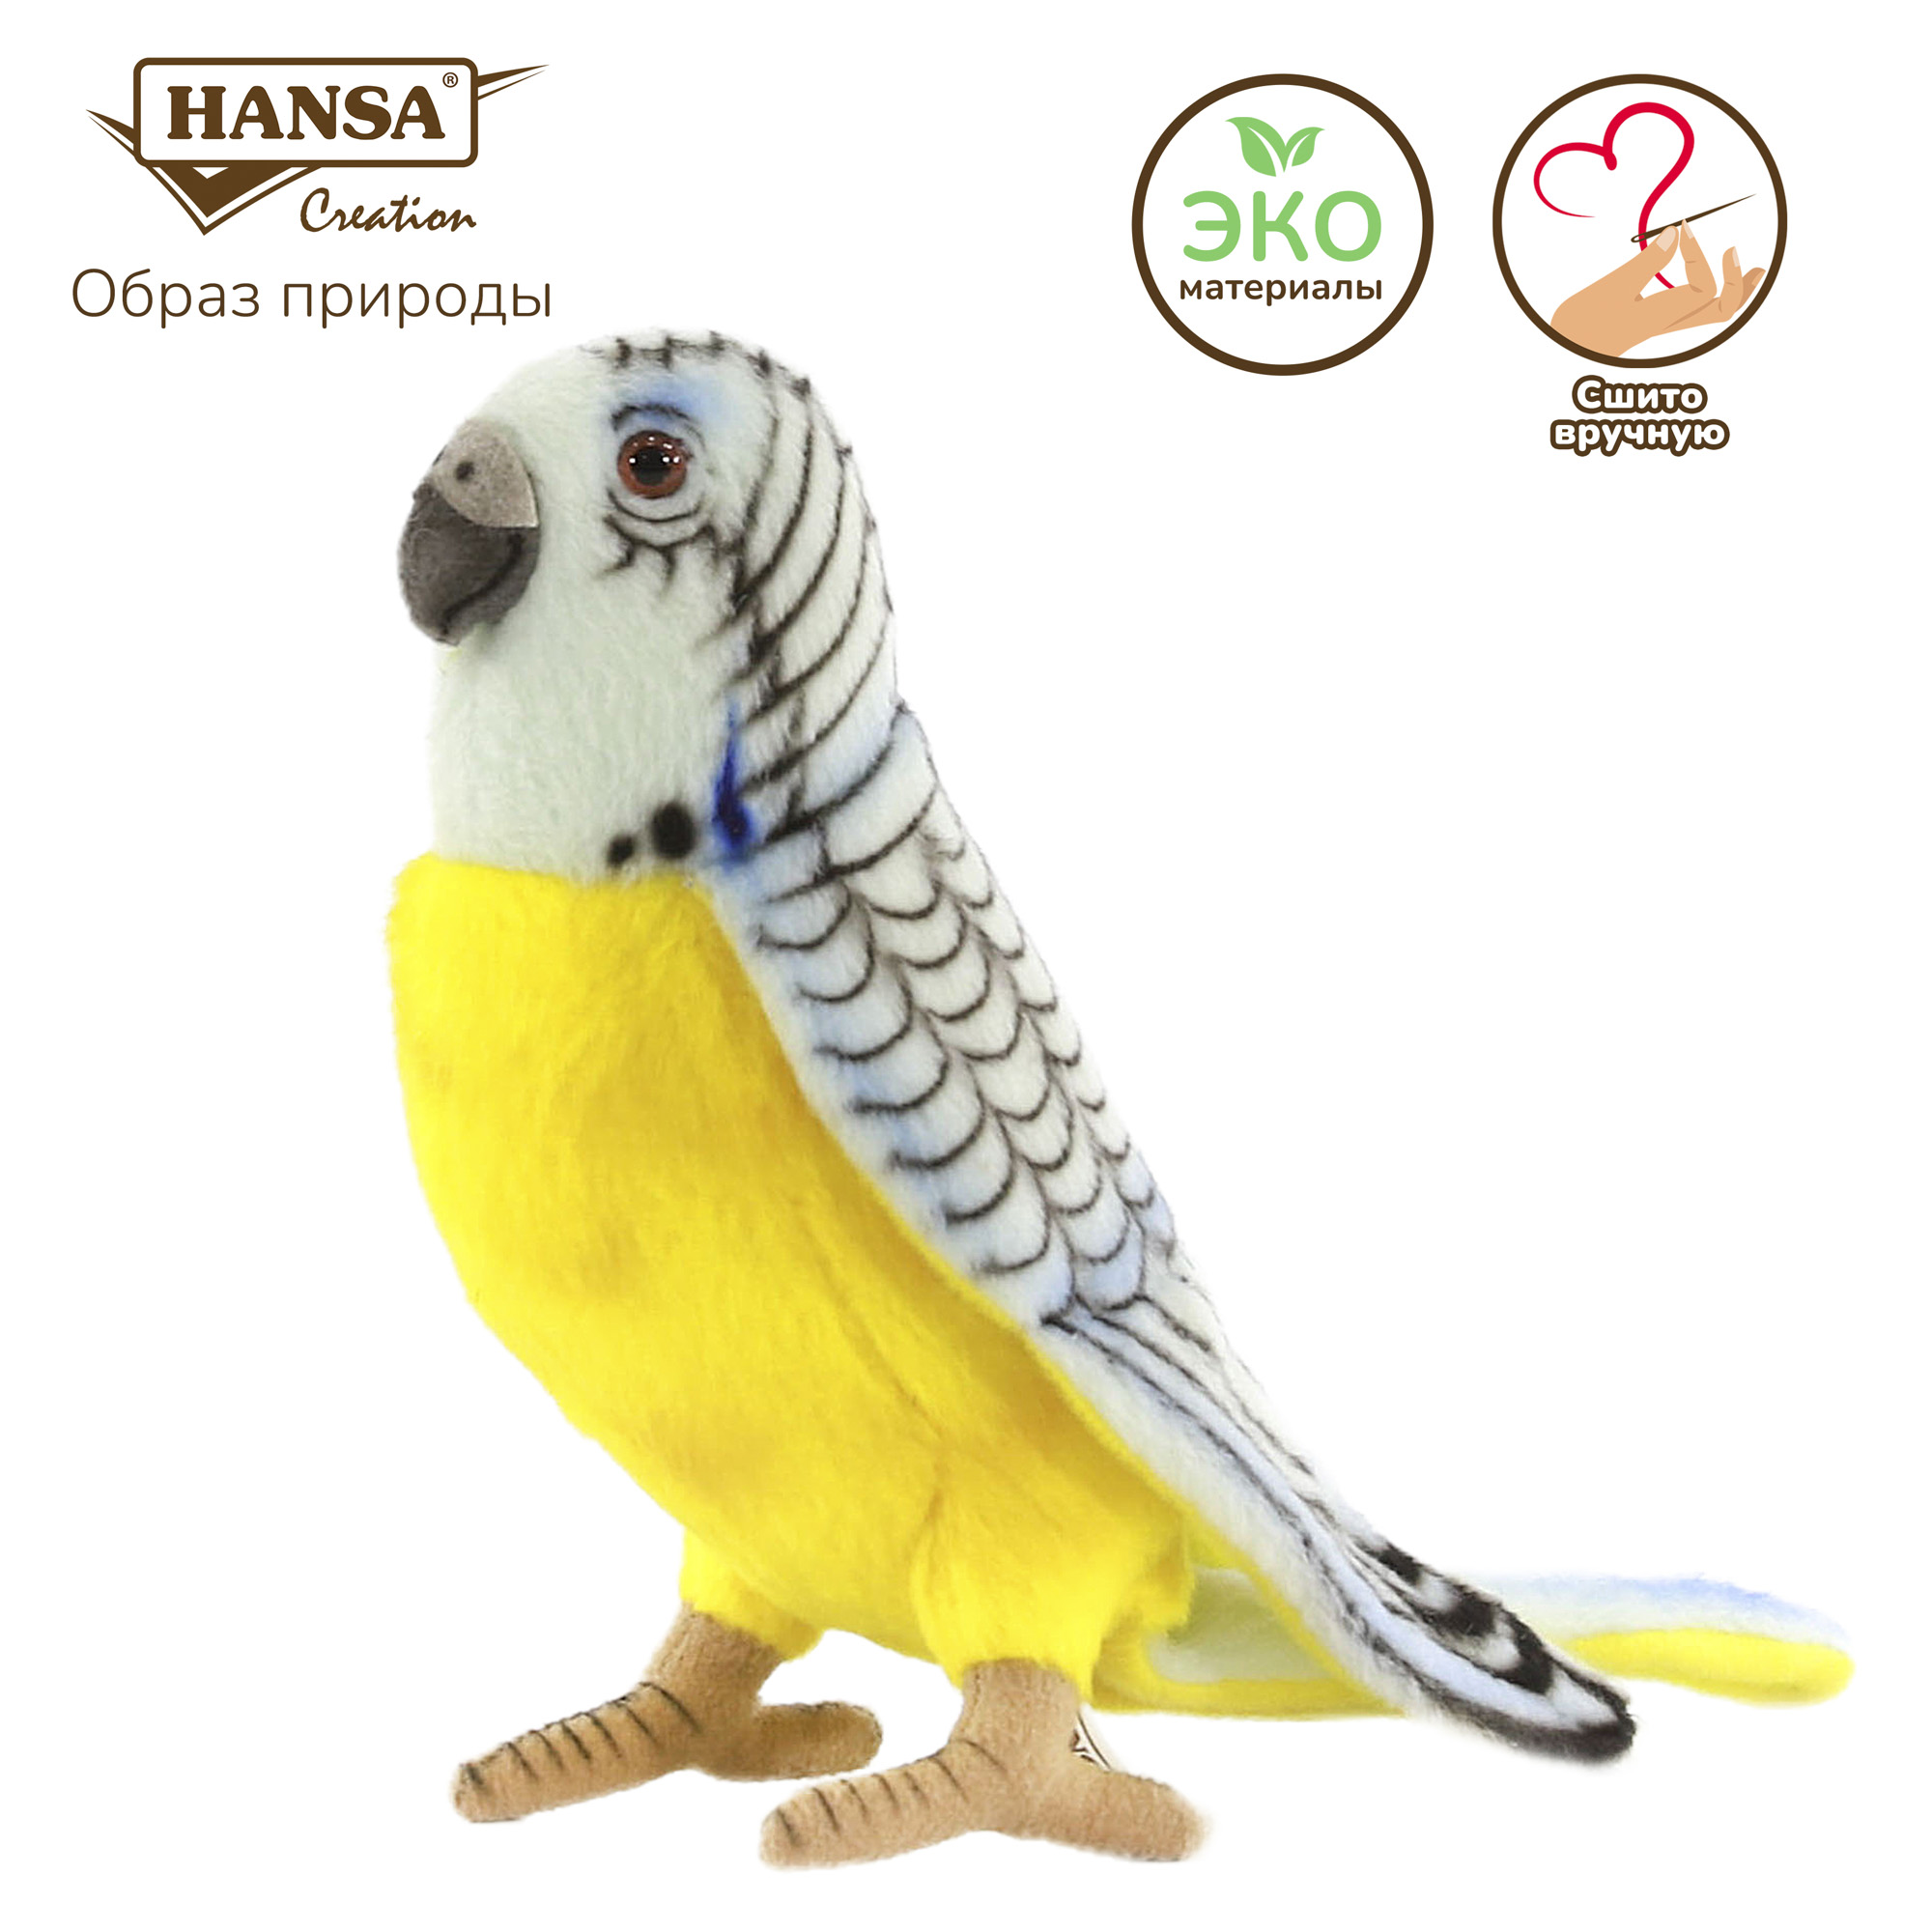 Реалистичная игрушка HANSA Попугай волнистый голубой 15 см - фото 2